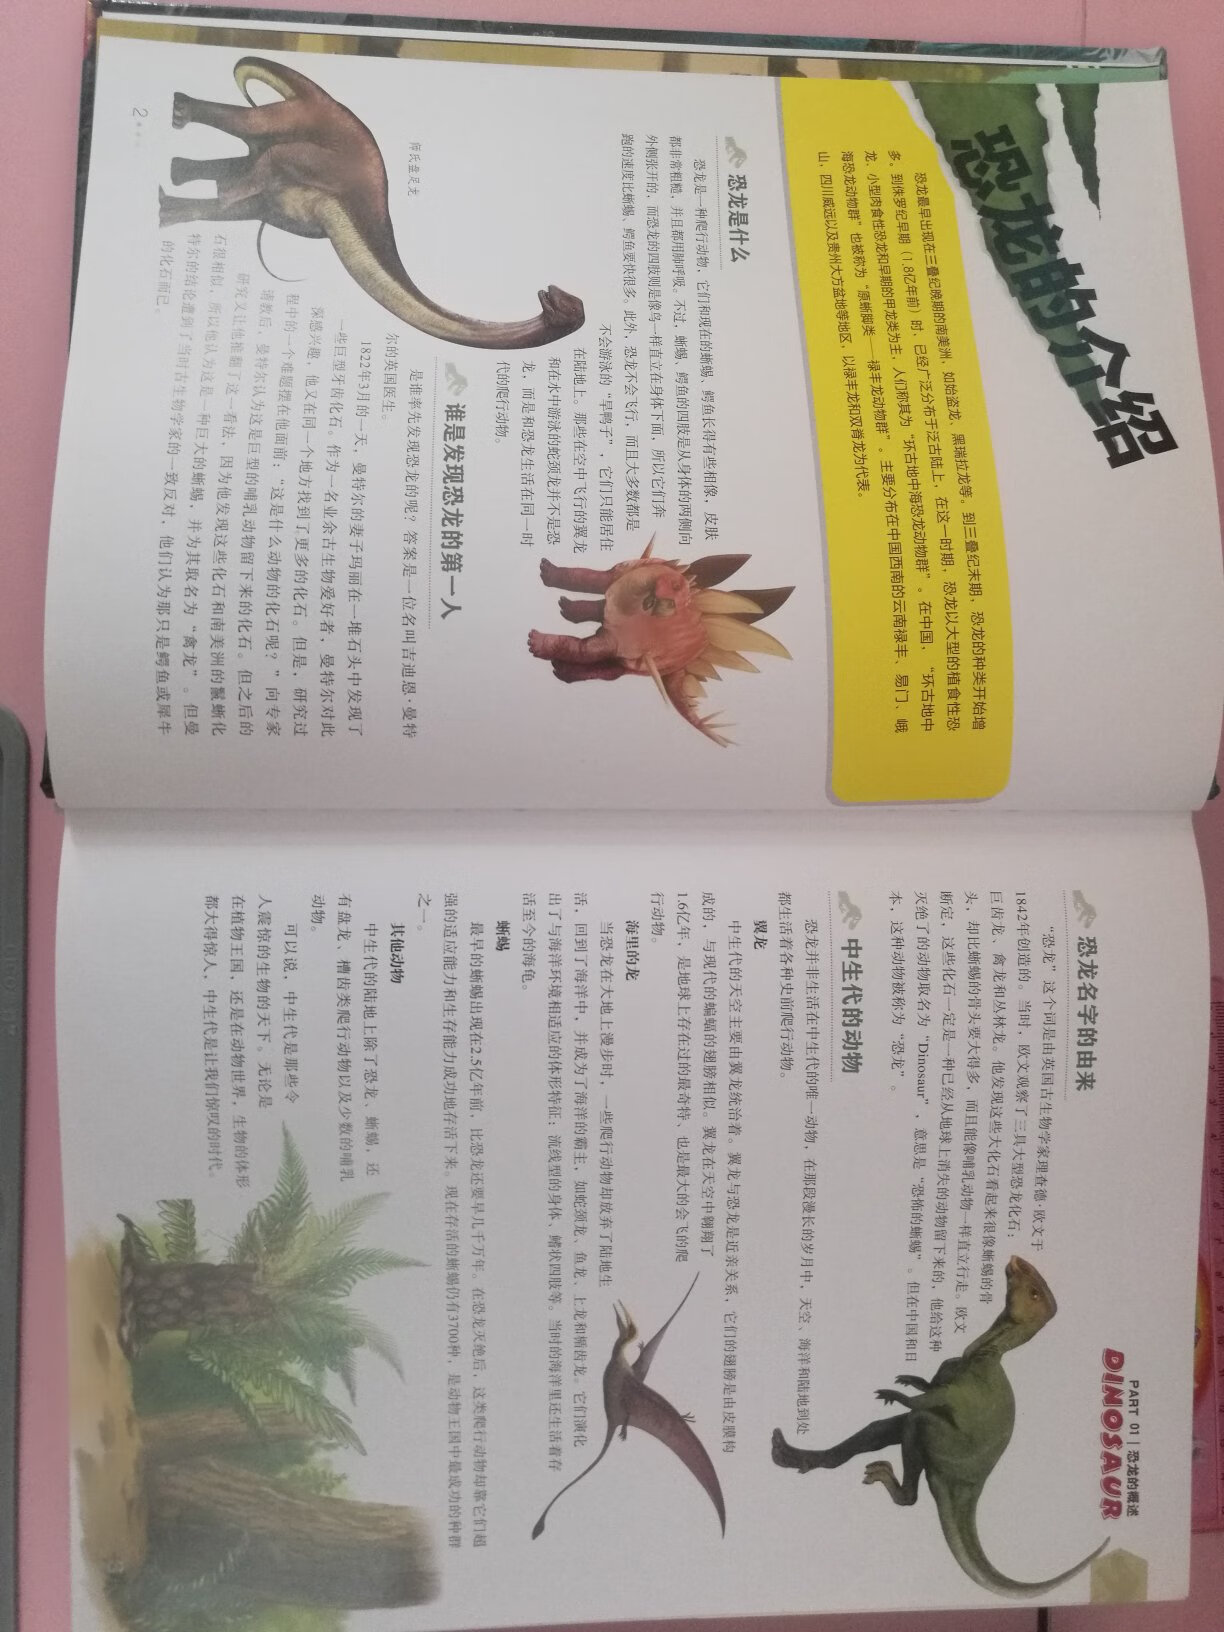 家里有个恐龙控的闺女，得到这本中国恐龙百科全书真是乐开花了。这本书实在是一本重量级的百科全书，内容特别丰富，纸质也非常好，全书厚度达4.5cm重量达到1.95KG，小孩自己拿这本书要靠抱的。全书共介绍了三百多种恐龙，每种恐龙除了有基本的概述以外还会从有恐龙档案，辞源和标本的介绍，非常全面。内页图片看起来有点3D的立体感，色彩比封面靓丽，看着很舒服。买书上准没错了，活动时候入手更超值，喜欢恐龙的放心入哦，有了这书就好比家里有了恐龙博物馆。